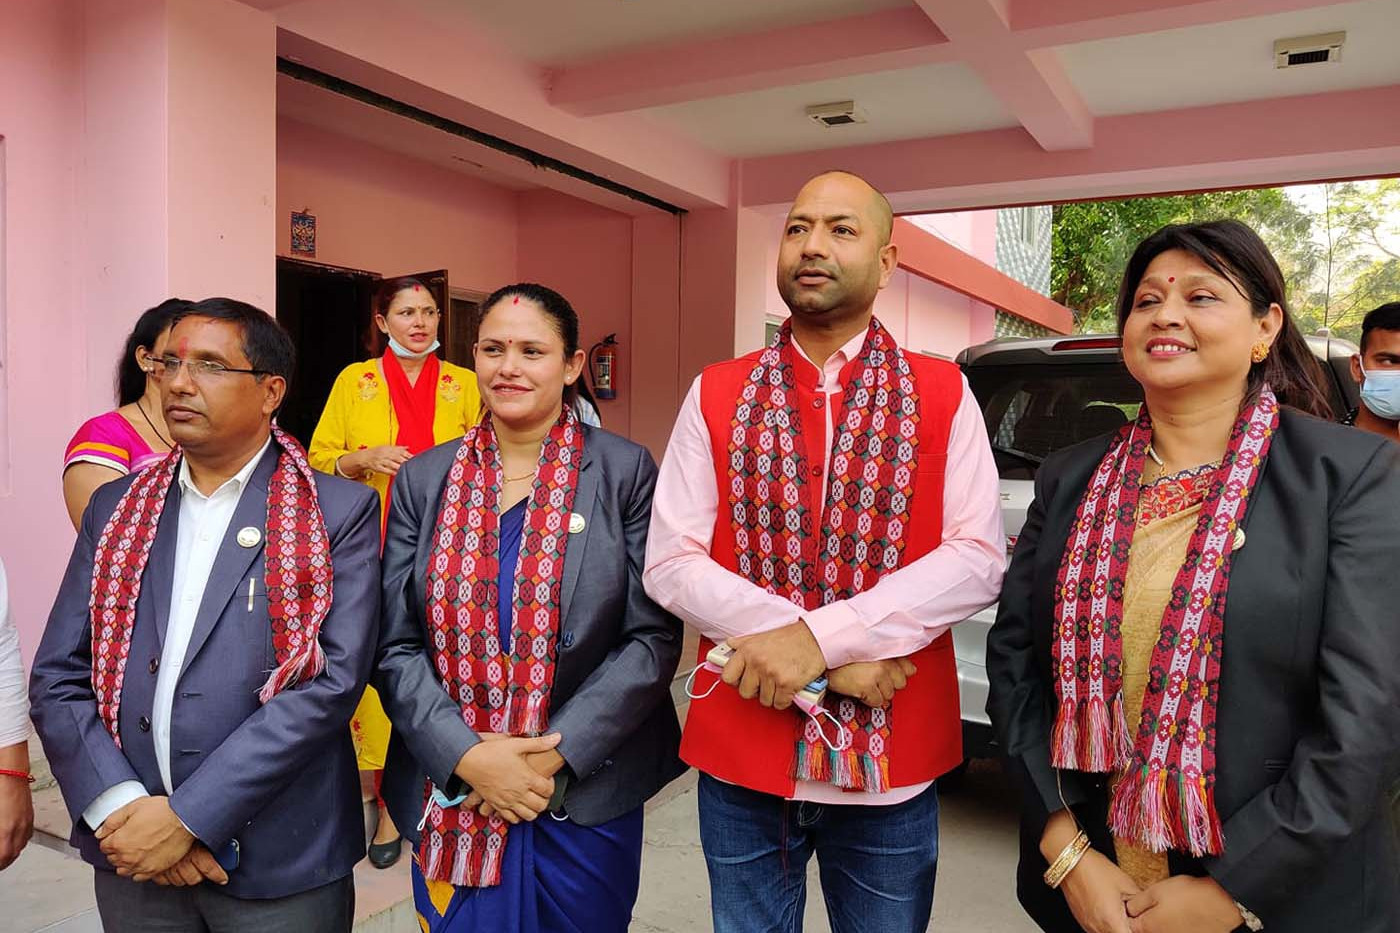 जसपाका पदमुक्त लुम्बिनी प्रदेशसभाका चार सांसदलाई पुनर्बहाली गर्न सर्वोच्चको आदेश